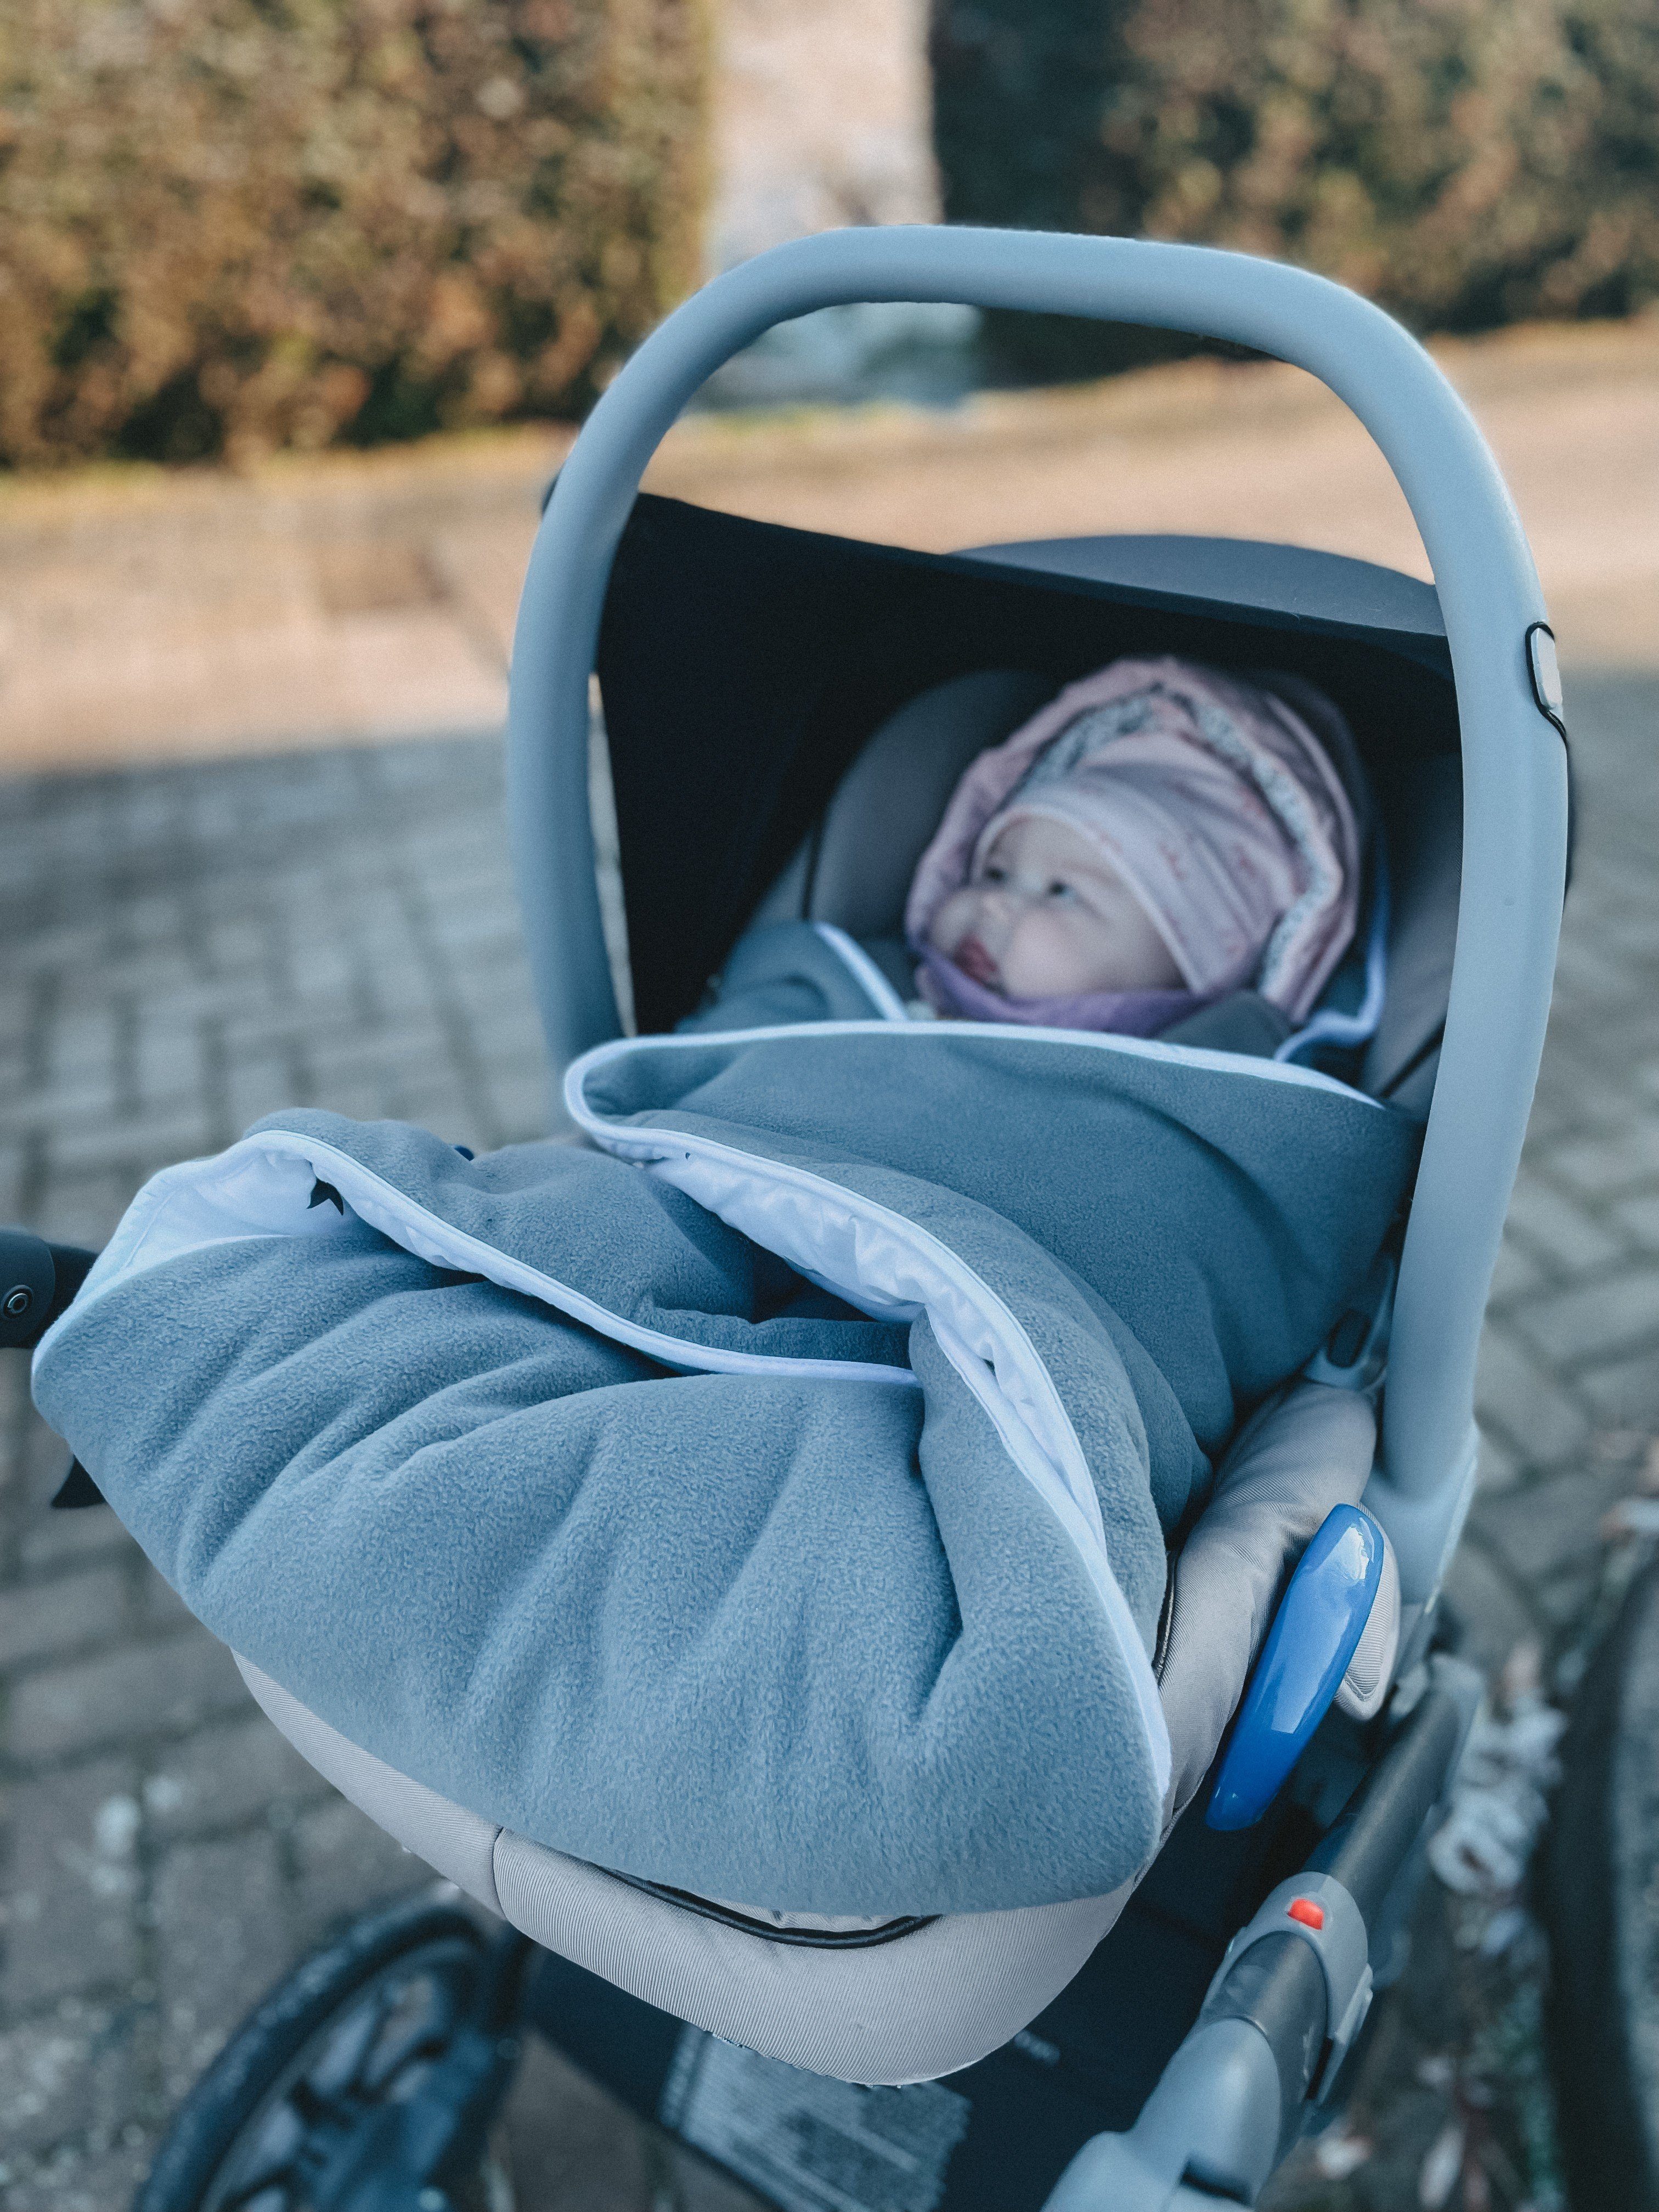 Babydecke Einschlagdecke Babyschalenfußsack Kinderwagenfußsack Winter 3- weiß HOBEA-Germany, für grau/Sternenmuster XL, und passend 5-Punkt-Gurtsystem Babyschalen mit